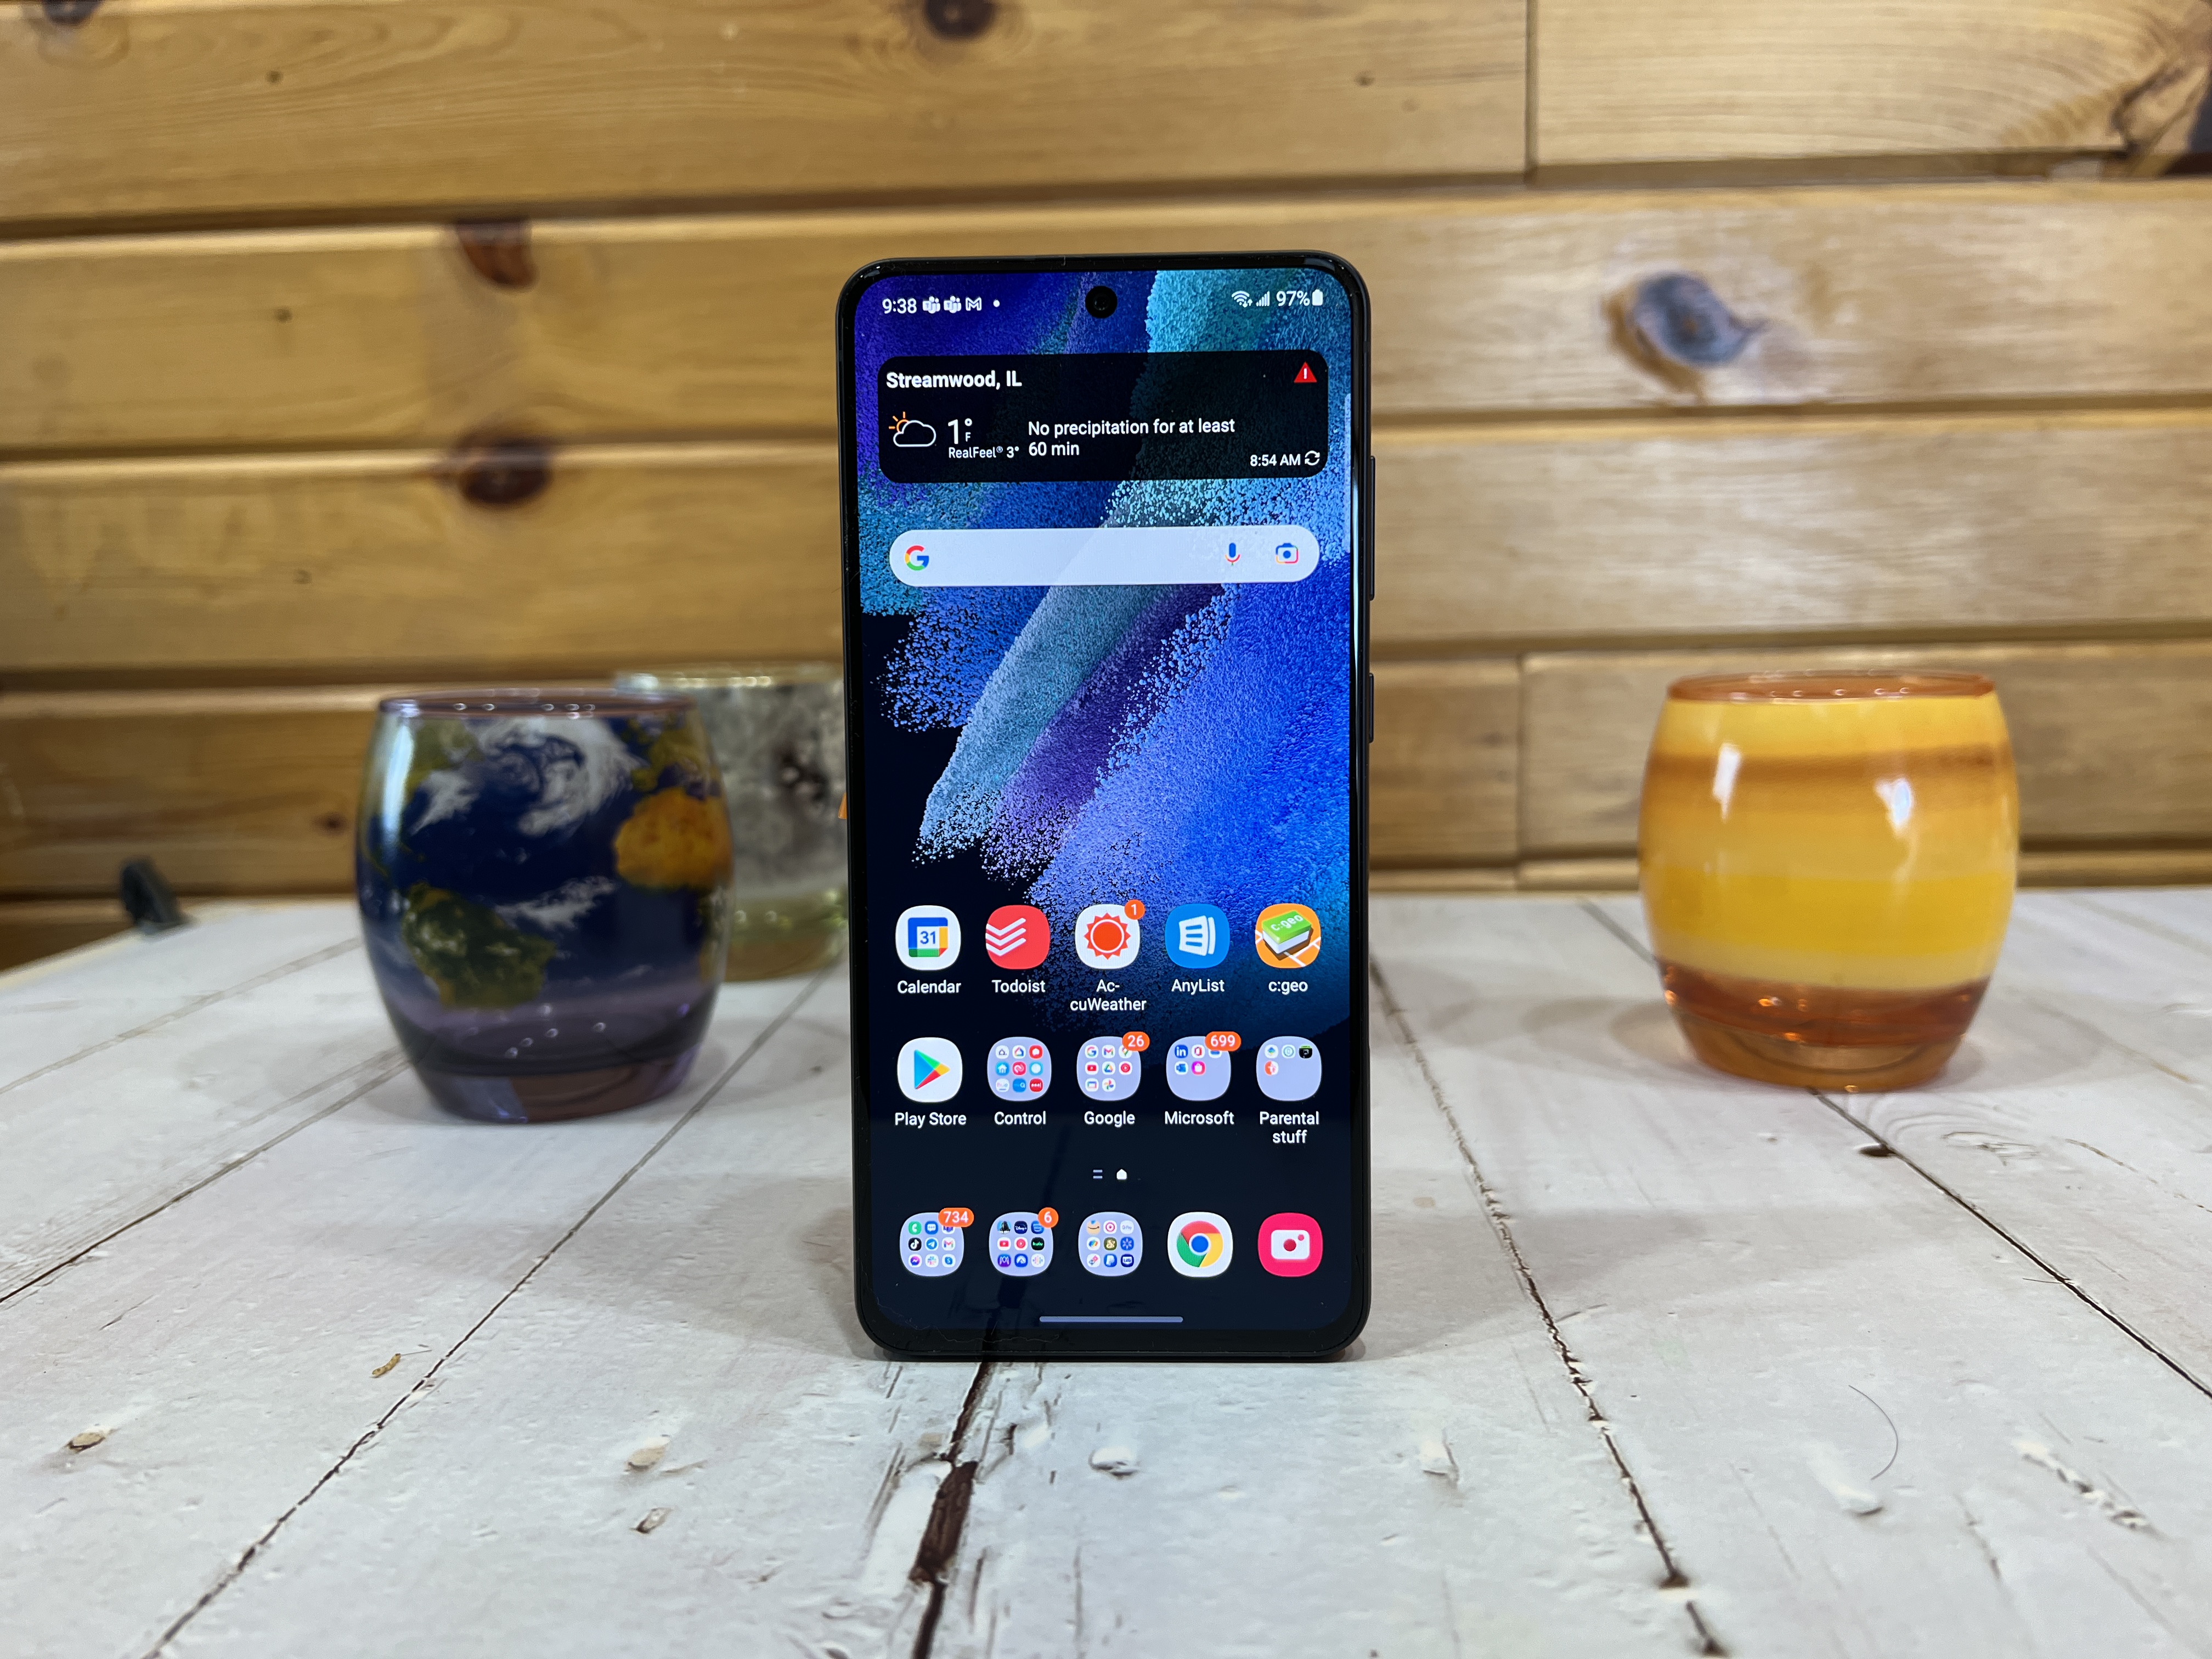 Samsung Galaxy S21 FE 5G là thiết bị di động hoàn hảo cho những người yêu công nghệ hàng đầu. Khám phá những đánh giá đã được đăng tải trên trang web của chúng tôi để biết thêm chi tiết về điện thoại này. Hãy là người đầu tiên sở hữu chiếc điện thoại tuyệt vời này!